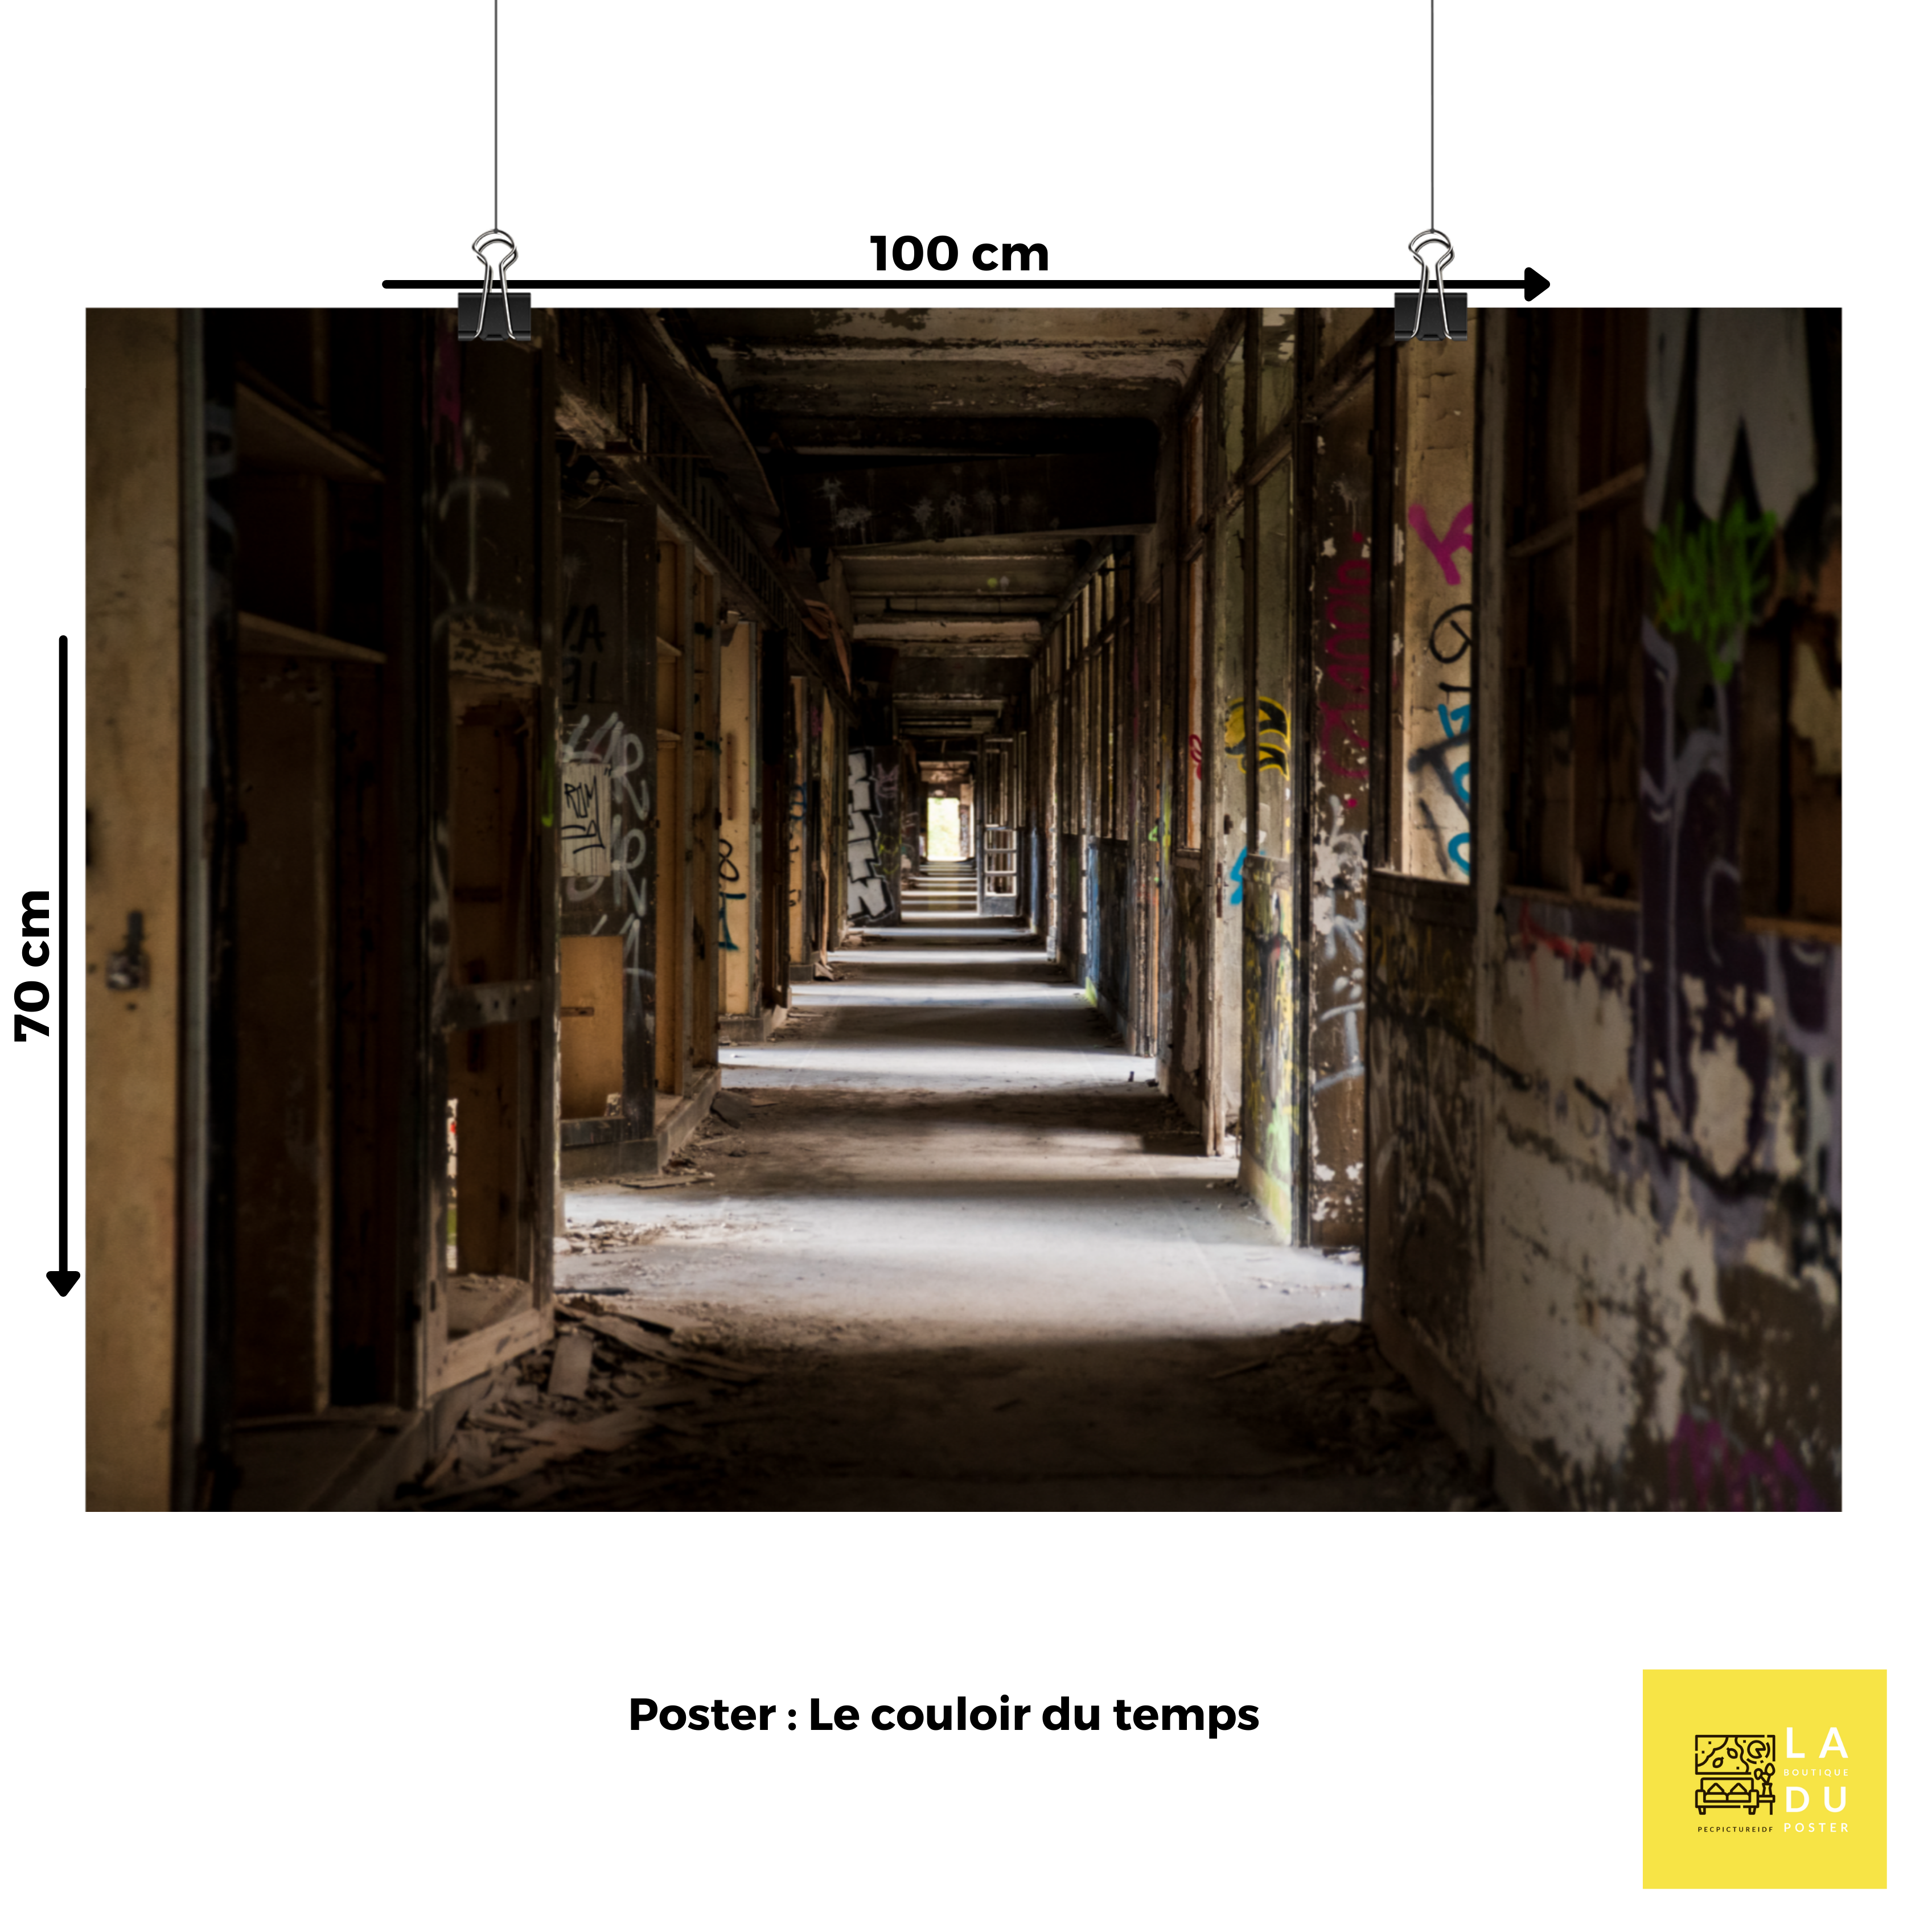 Le couloir du temps - Poster - La boutique du poster Français